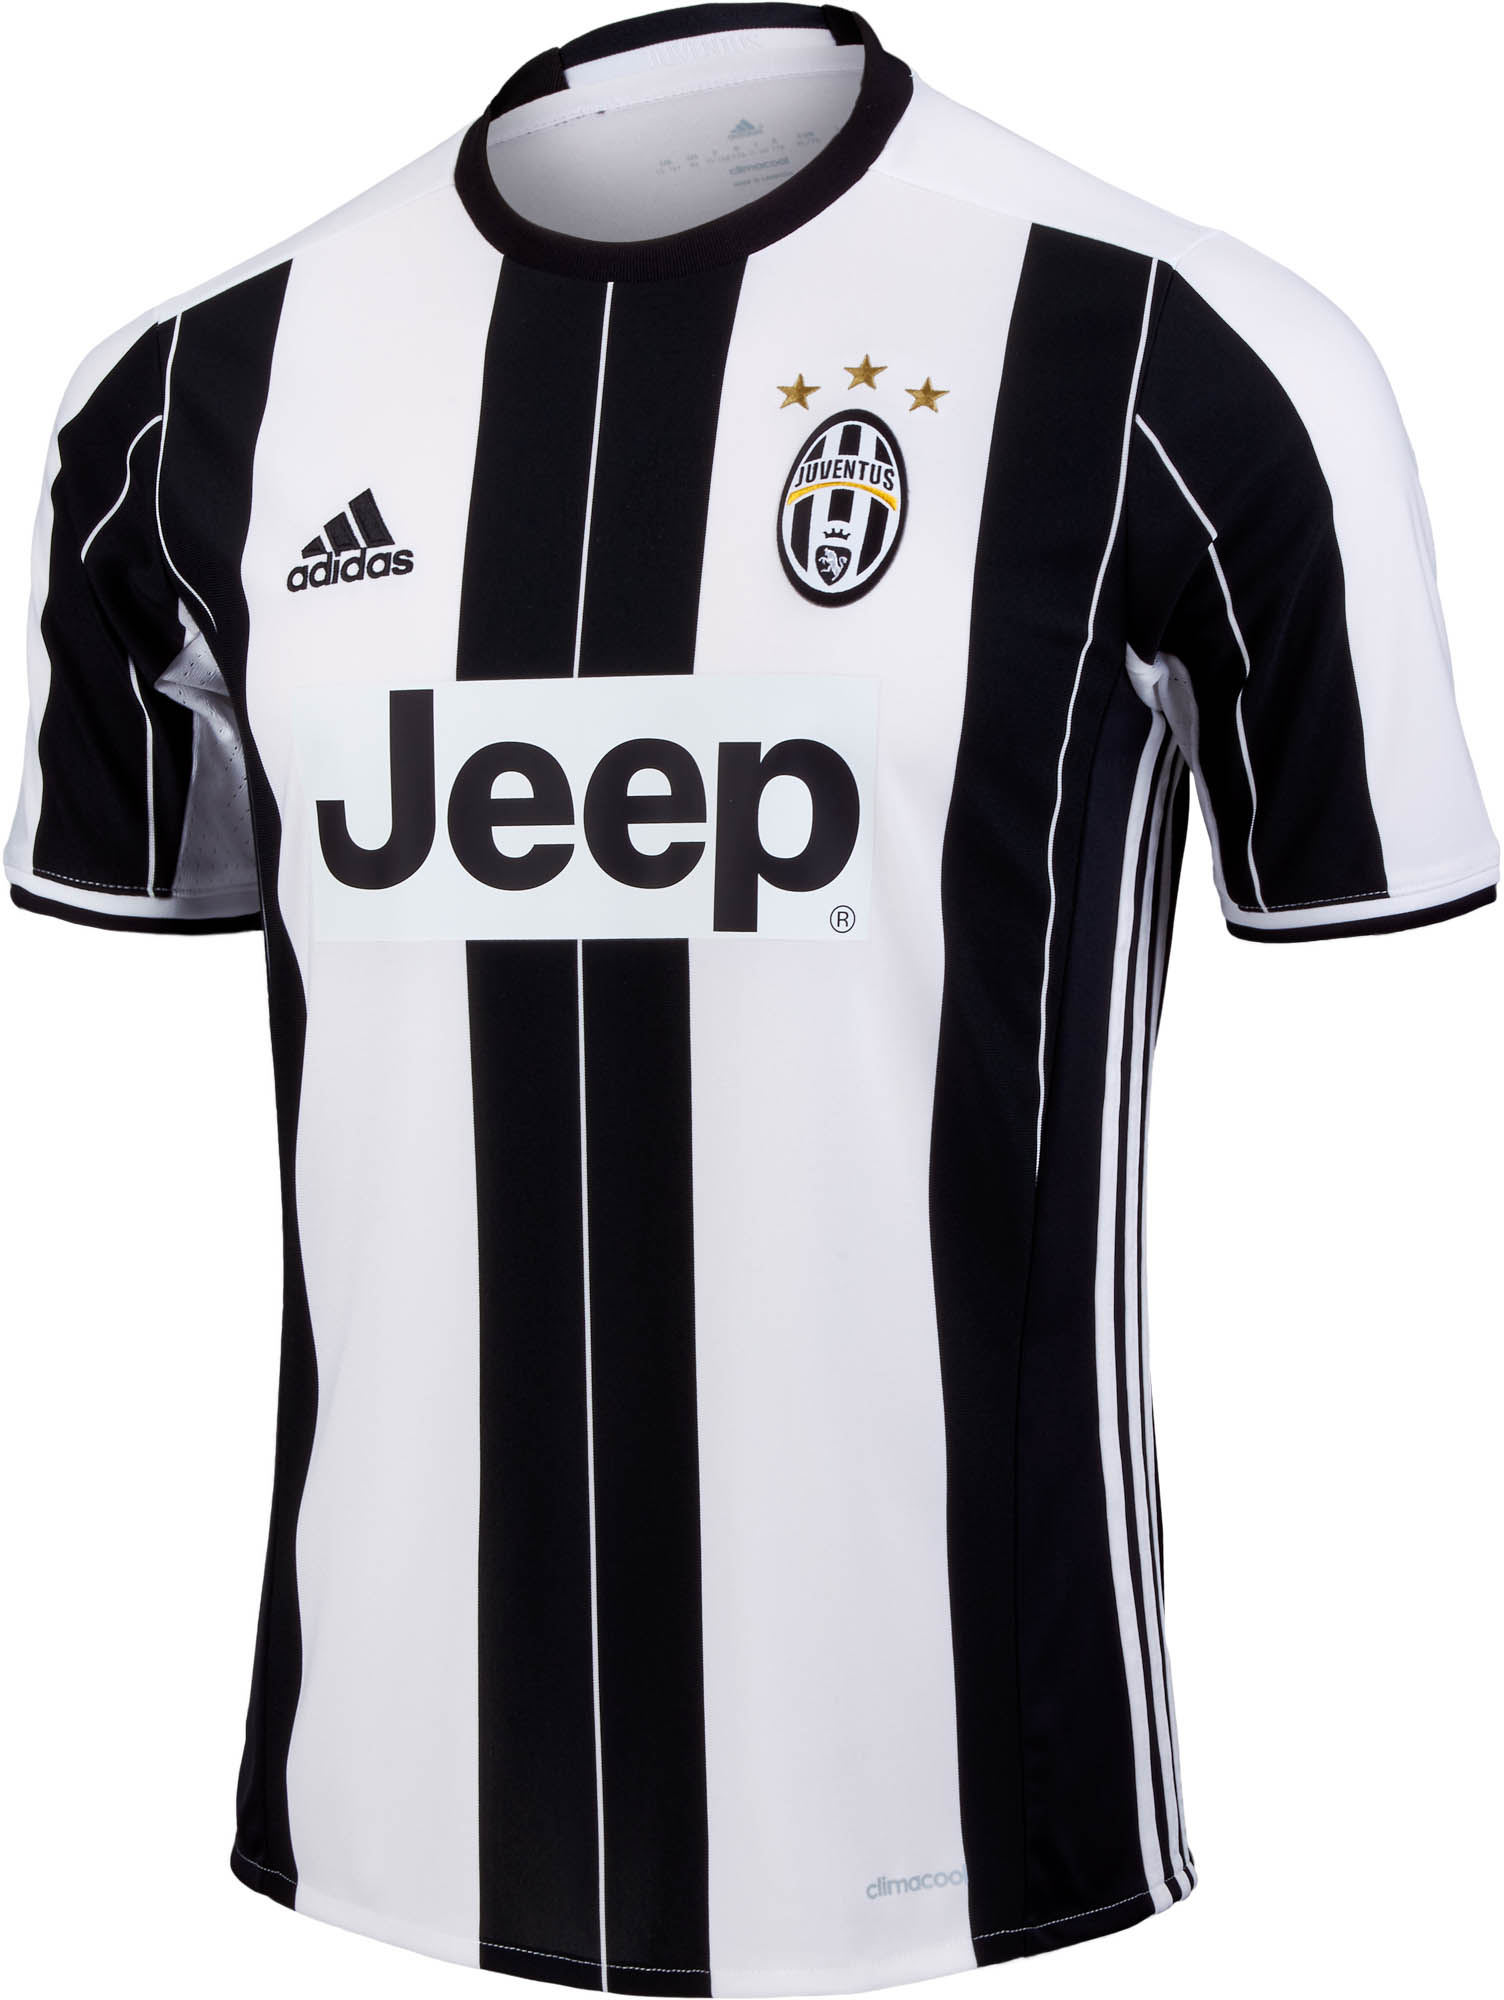 adidas Kids Juventus Home Jersey - 2016 Juventus Youth Jerseys